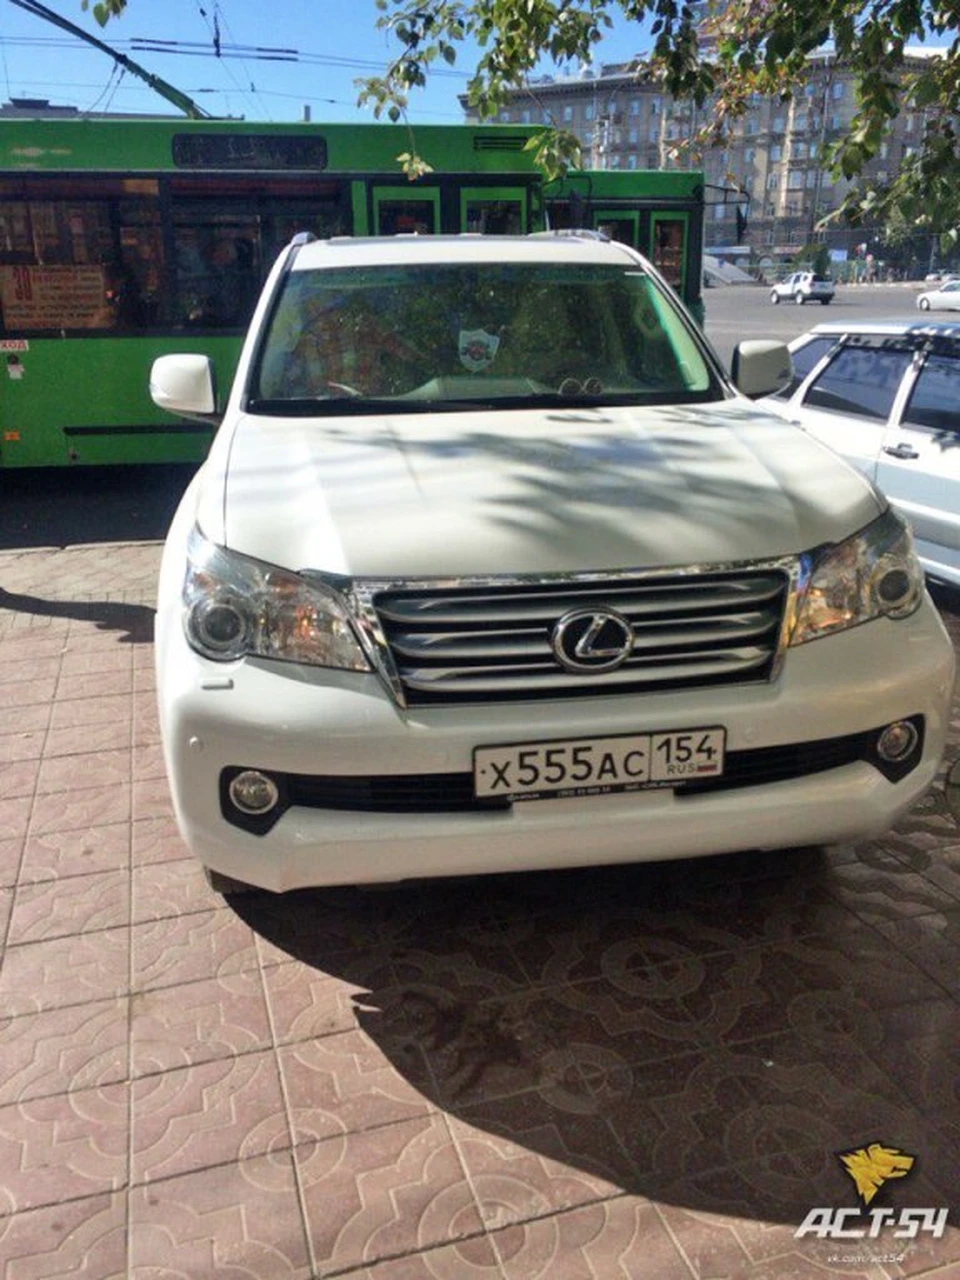 "Лексус" был припаркован на площади Калинина